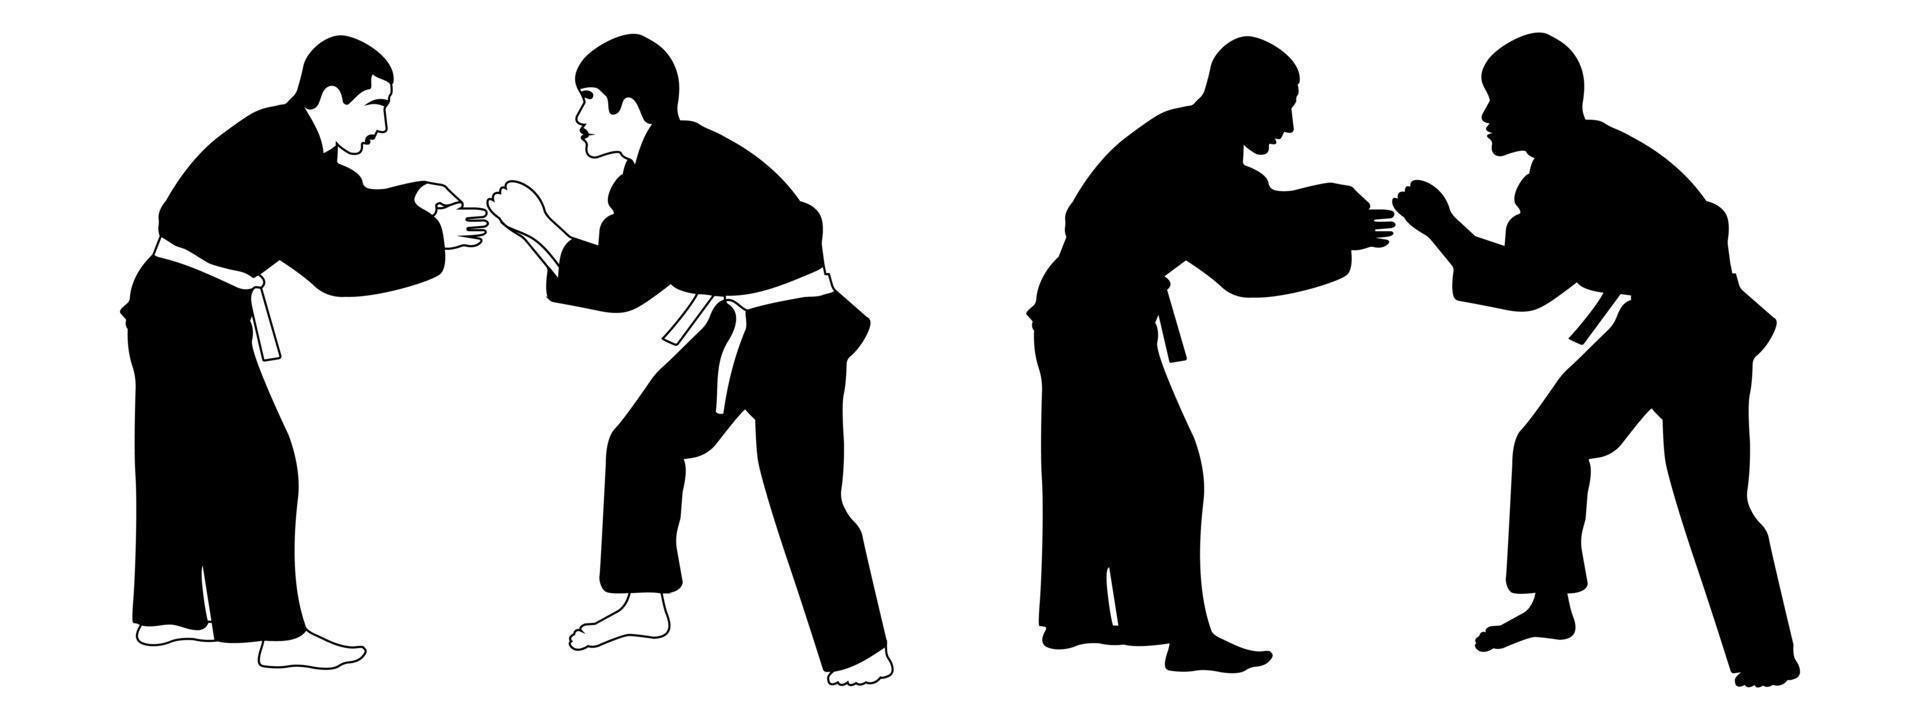 el contorno de la silueta negra de un atleta judoka en un duelo, lucha. deporte de judo, arte marcial. vector